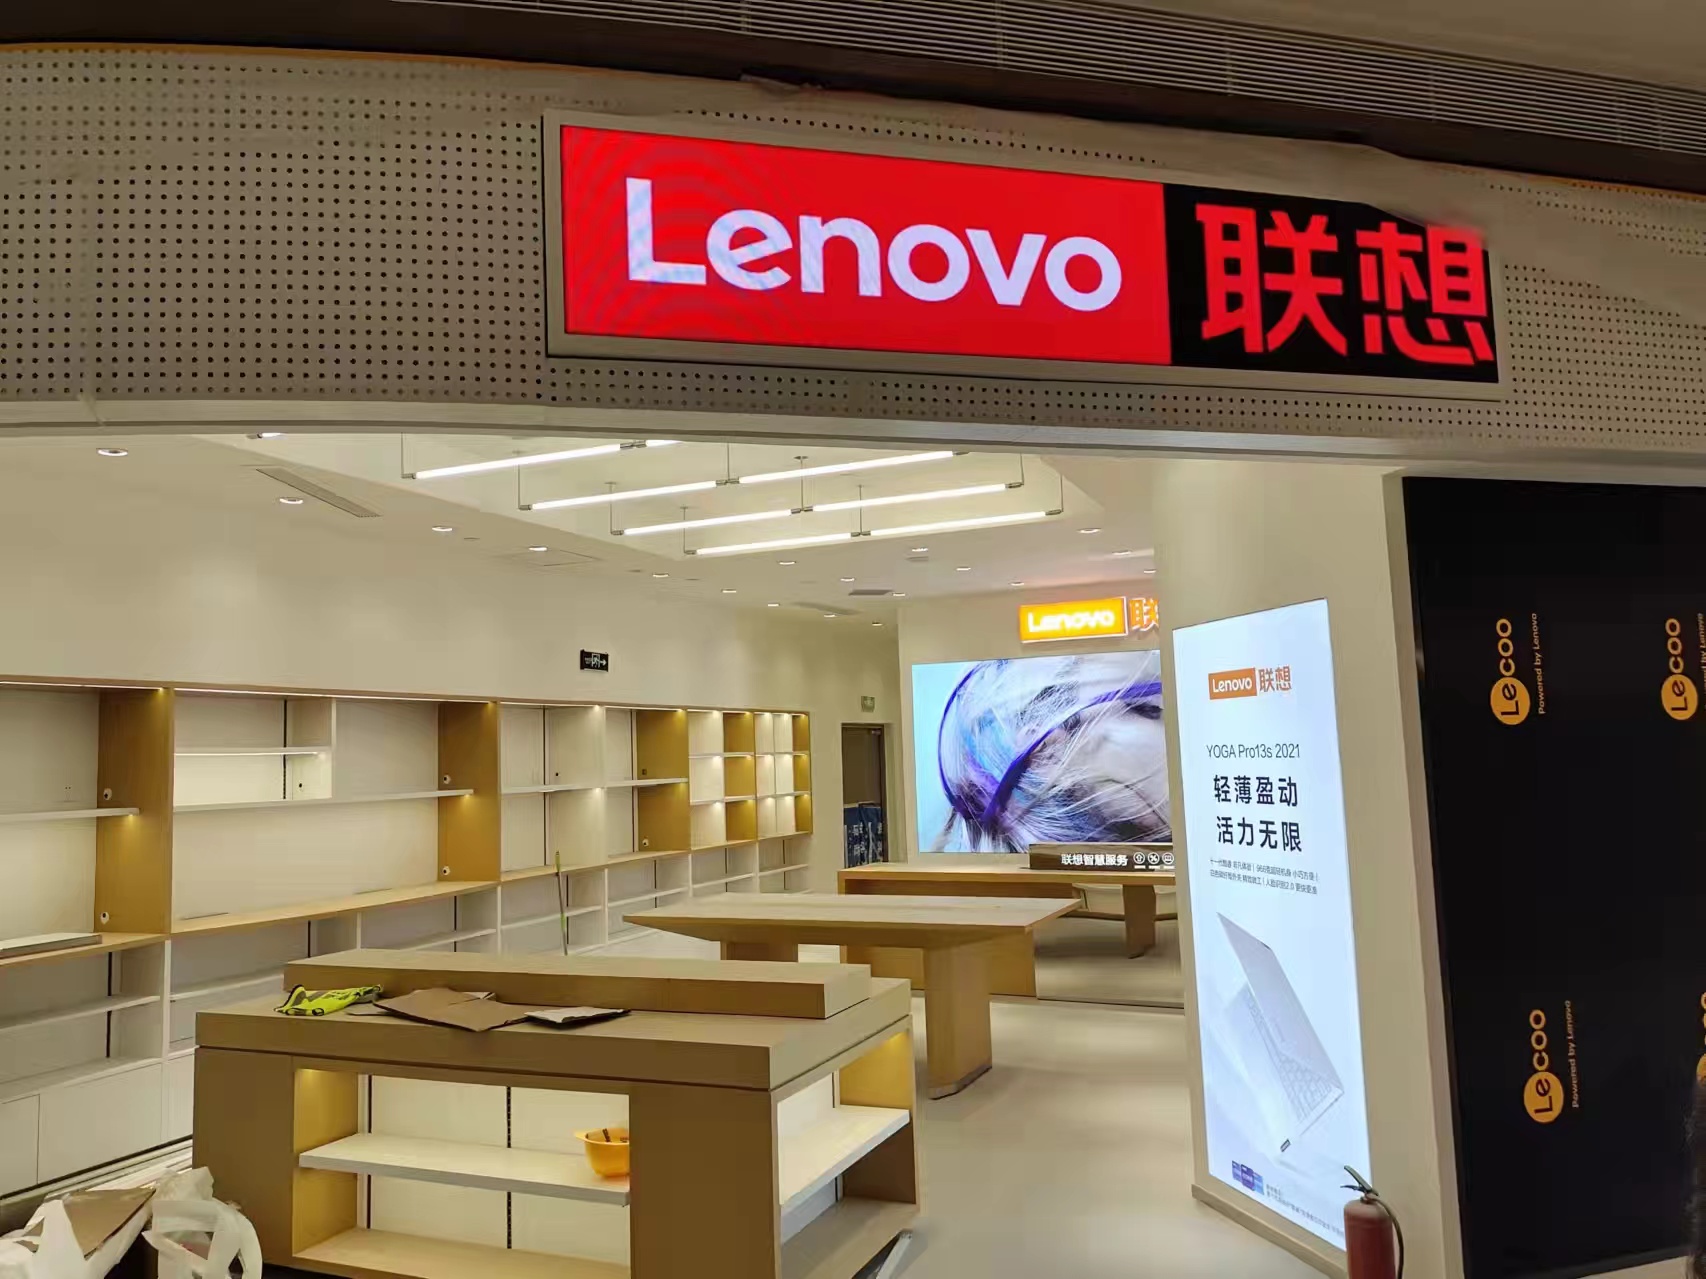 Proyecto de Pantalla LED interior de la tienda Lenovo